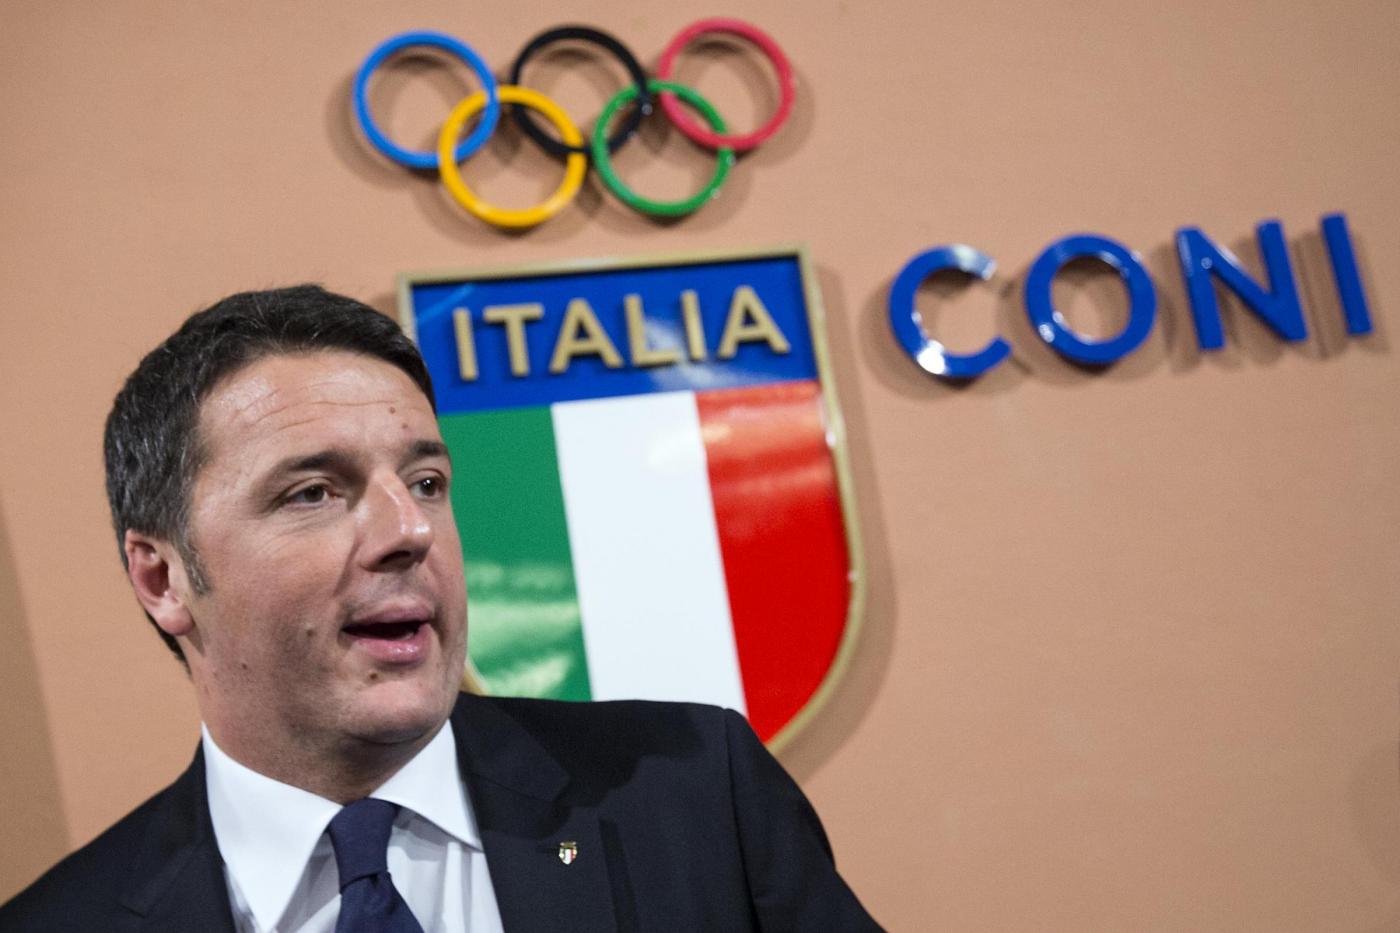 Coni - Matteo Renzi annuncia la candidatura di Roma alle Olimpiadi 2024